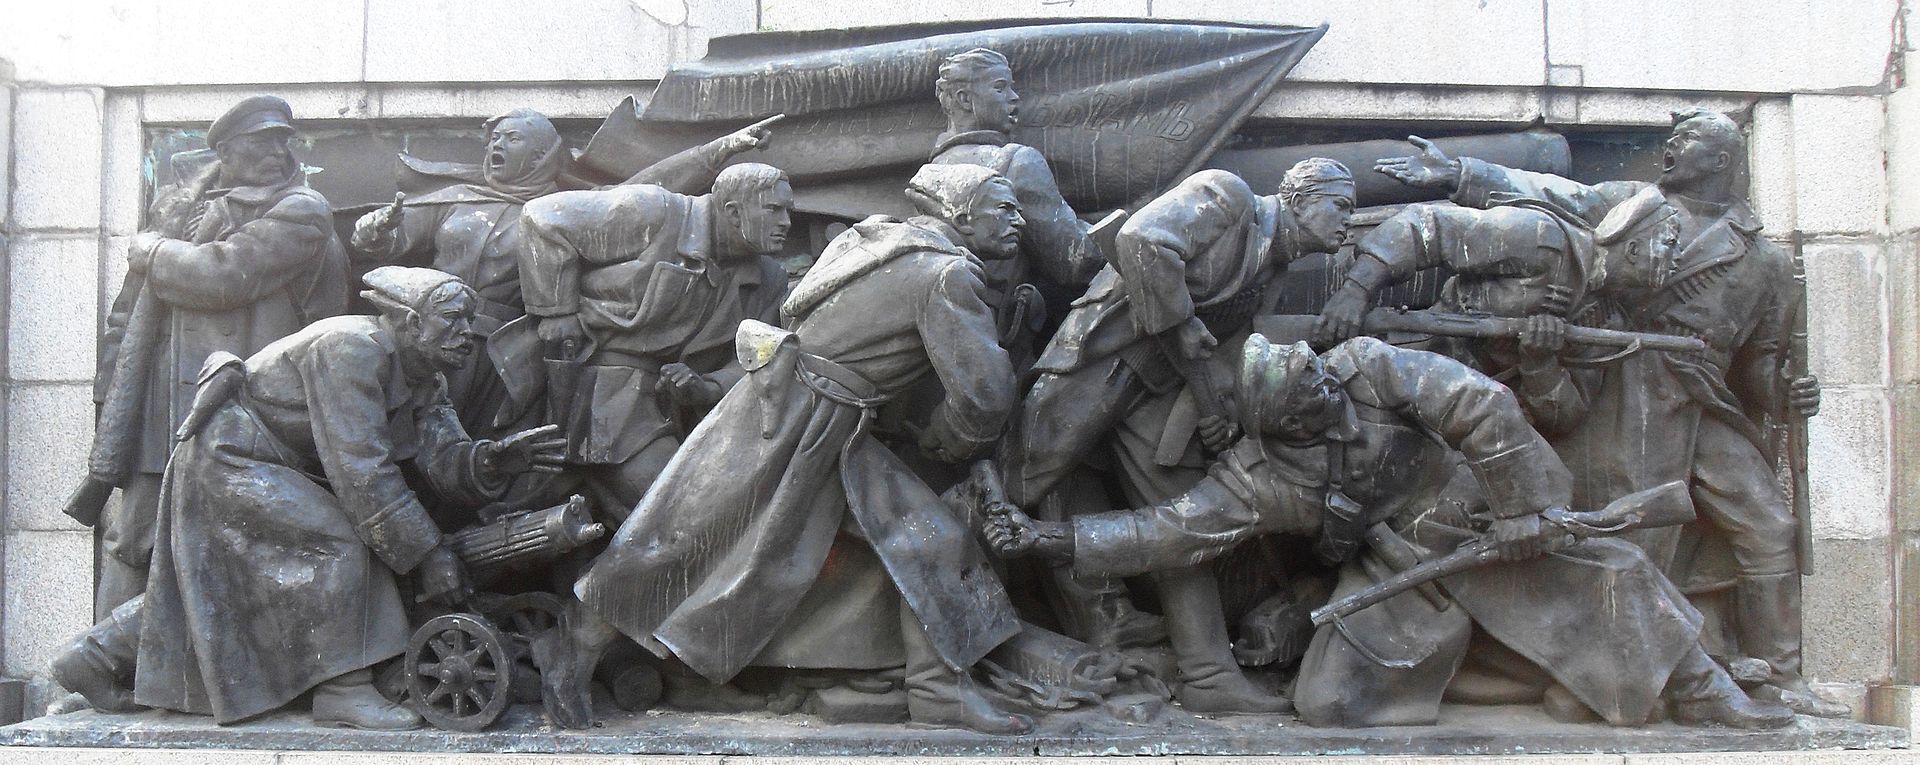 Скулптурна композиция върху източната страна на фундамента, представляваща Октомврийската революция в Русия, довела до създаването на СССР.